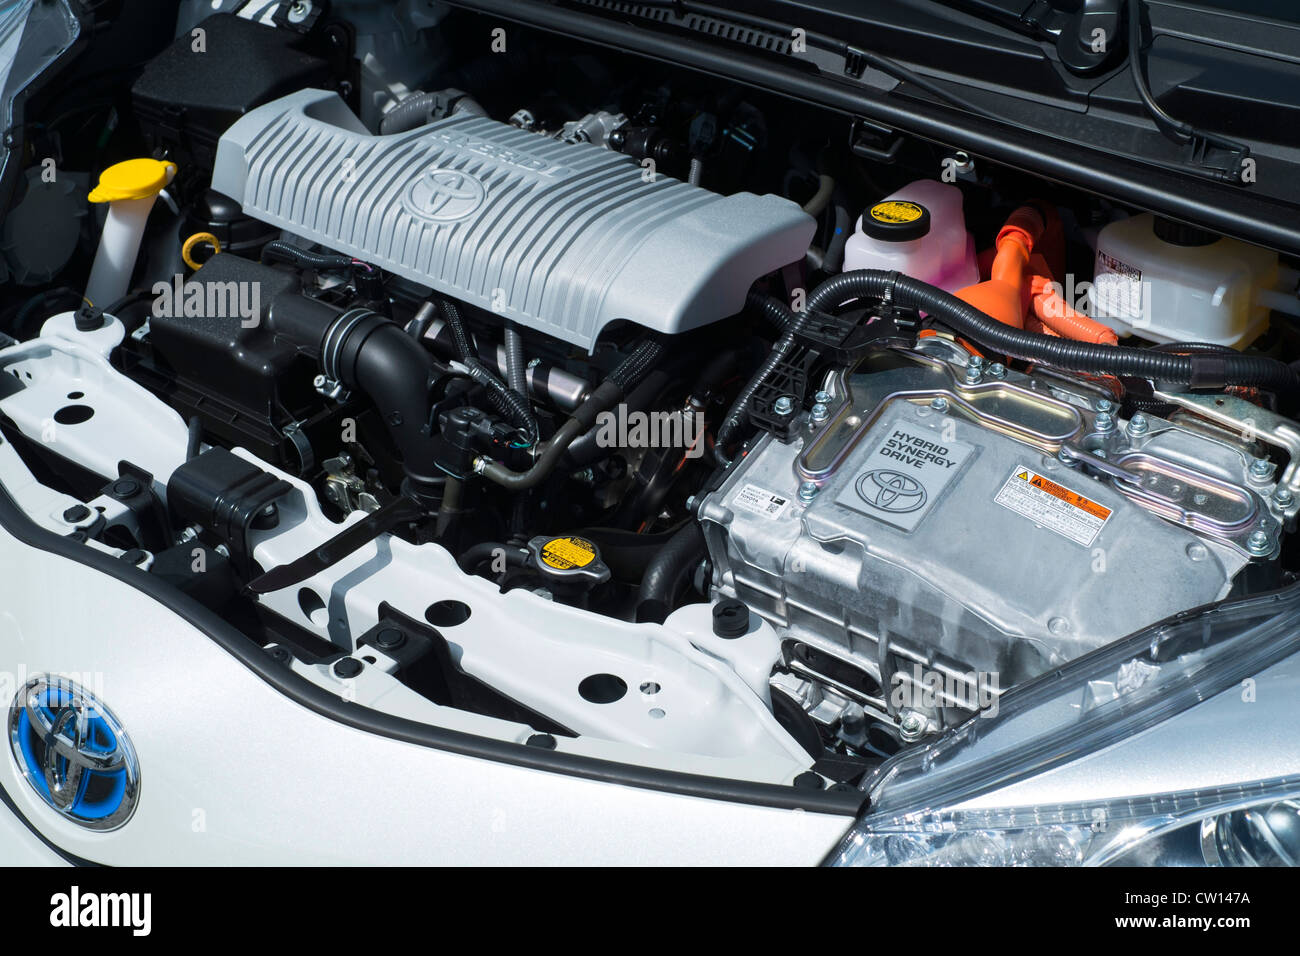 Detalle de motor híbrido eléctrico y de gasolina en nuevo Toyota Yaris coche Foto de stock